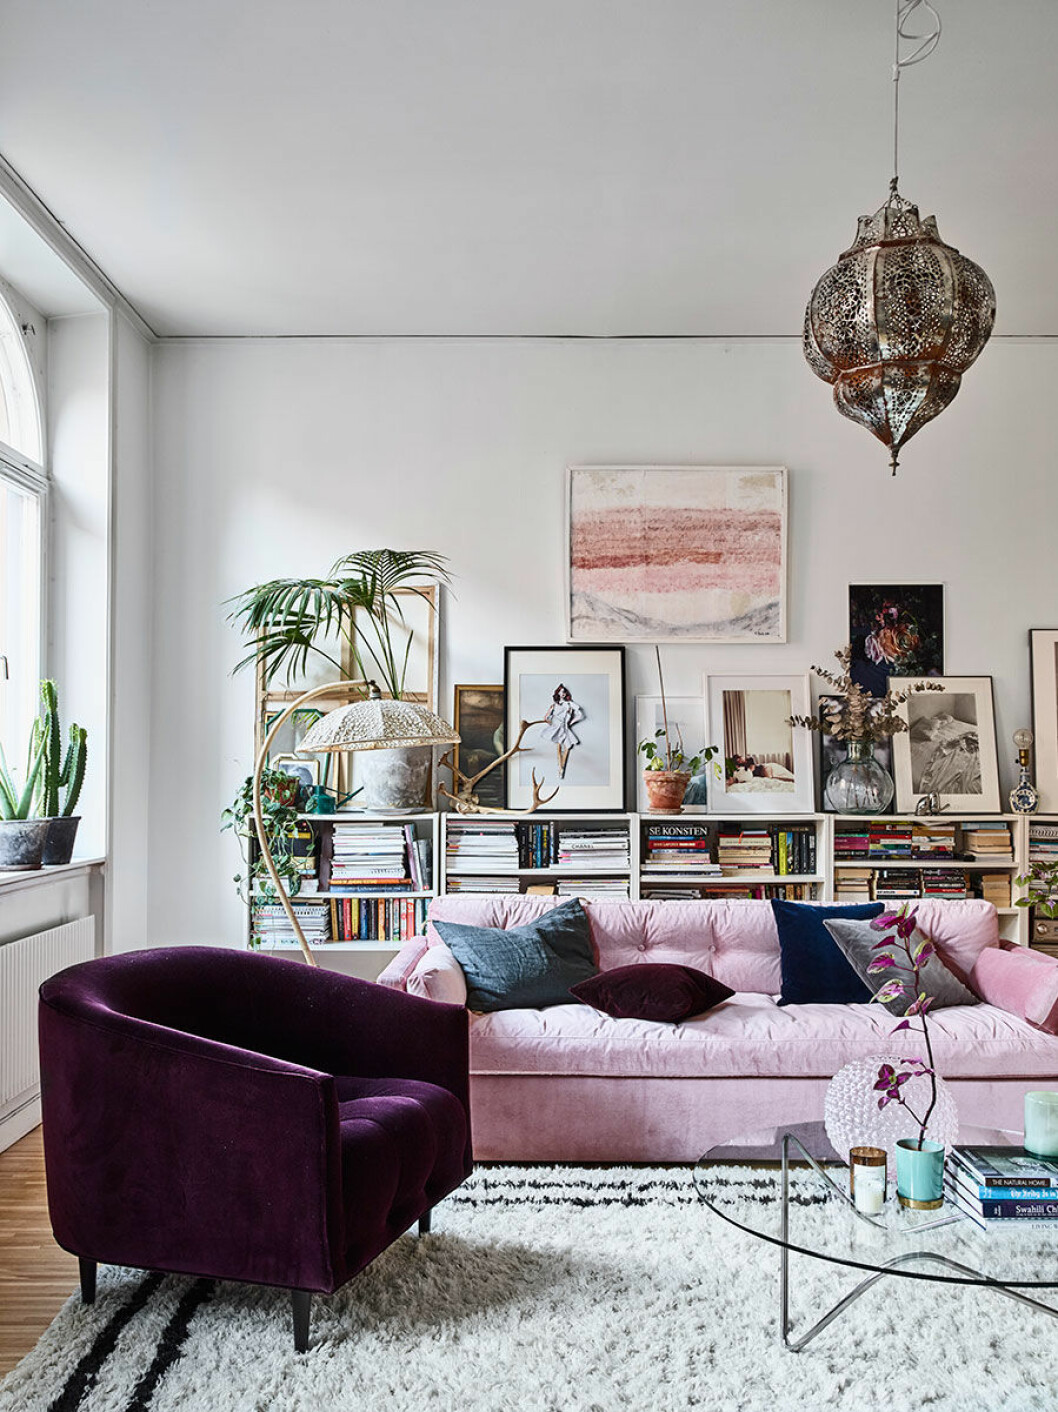 Ombonat vardagsrum med möbler i lila och ljusrosa